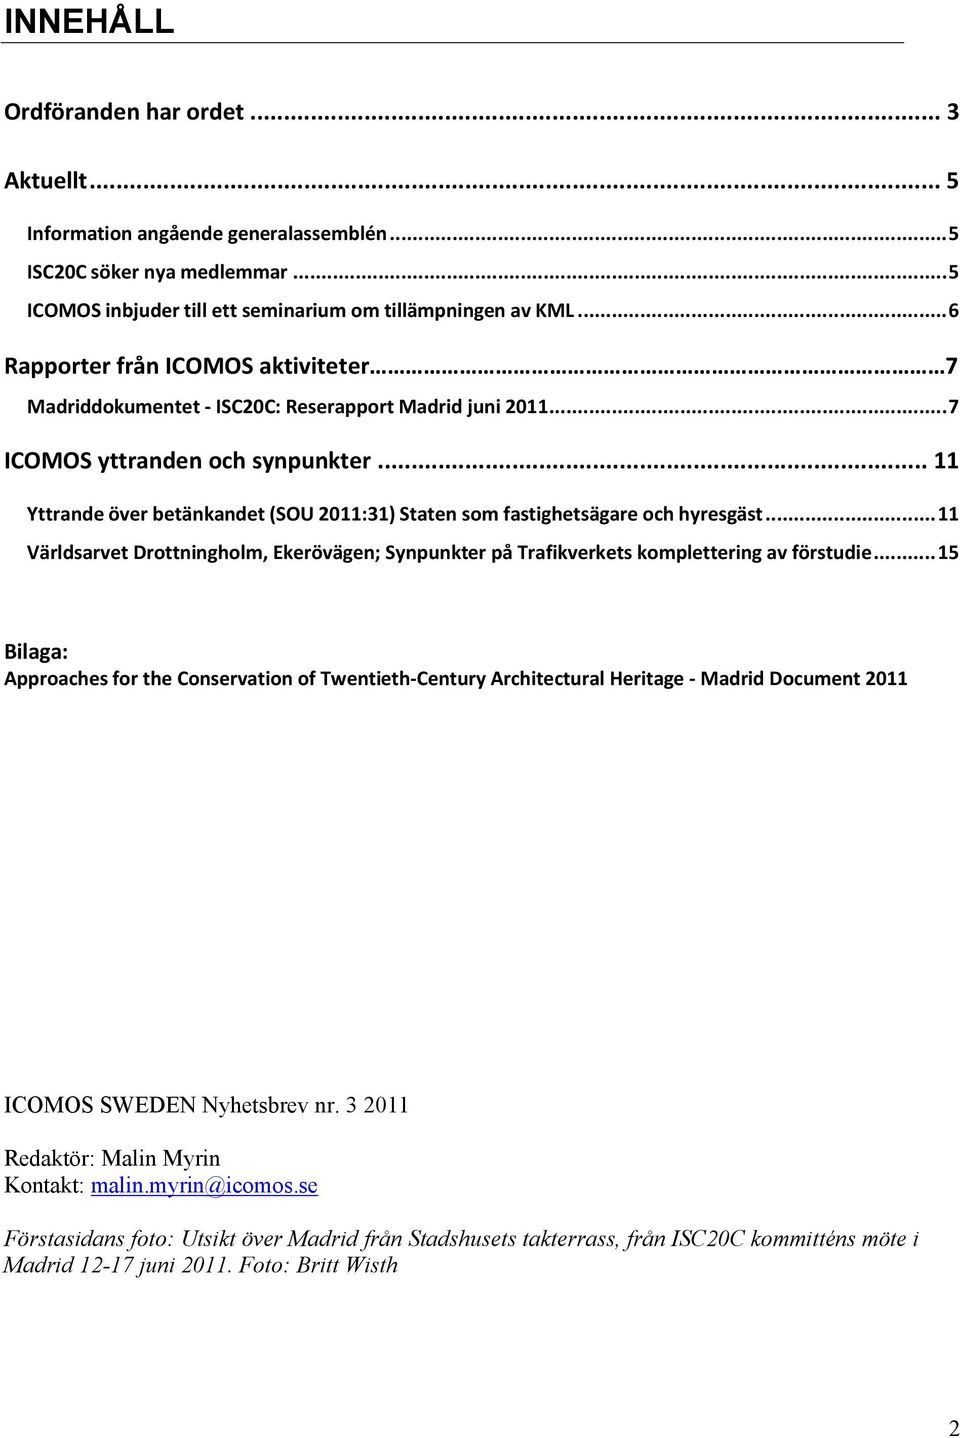 .. 11 Yttrande över betänkandet (SOU 2011:31) Staten som fastighetsägare och hyresgäst... 11 Världsarvet Drottningholm, Ekerövägen; Synpunkter på Trafikverkets komplettering av förstudie.